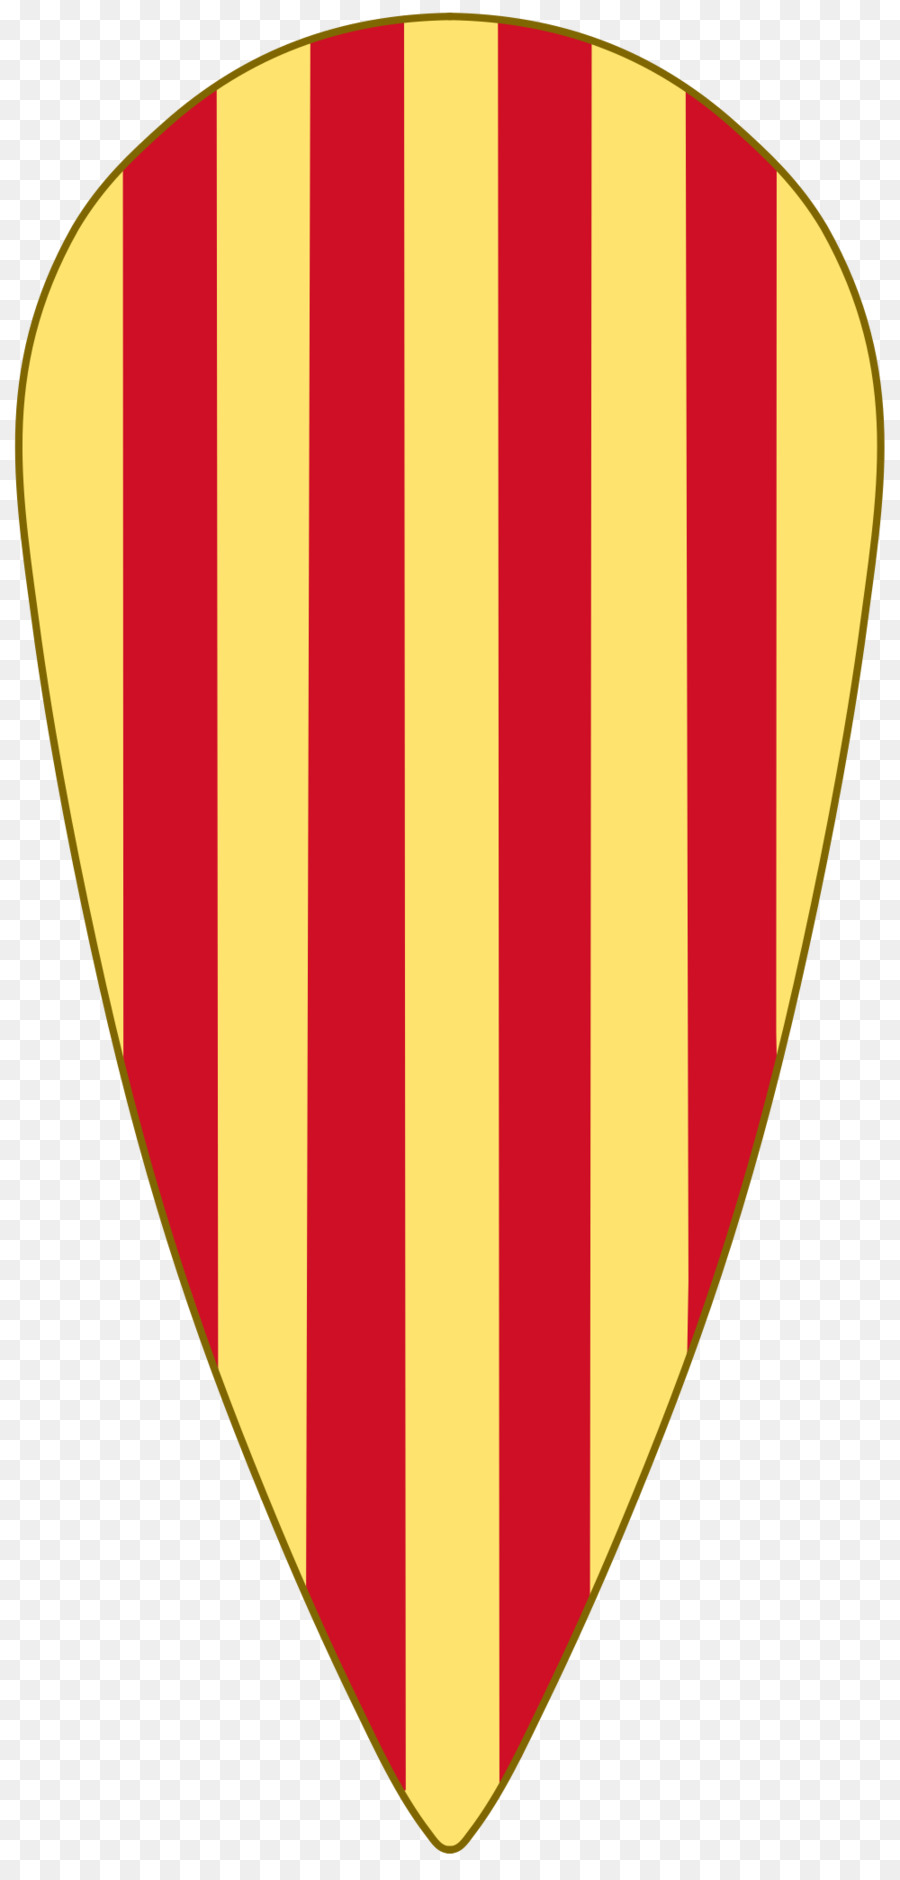 County của Barcelona vương Miện của Aragon Vương quốc của Aragon huy - cái khiên